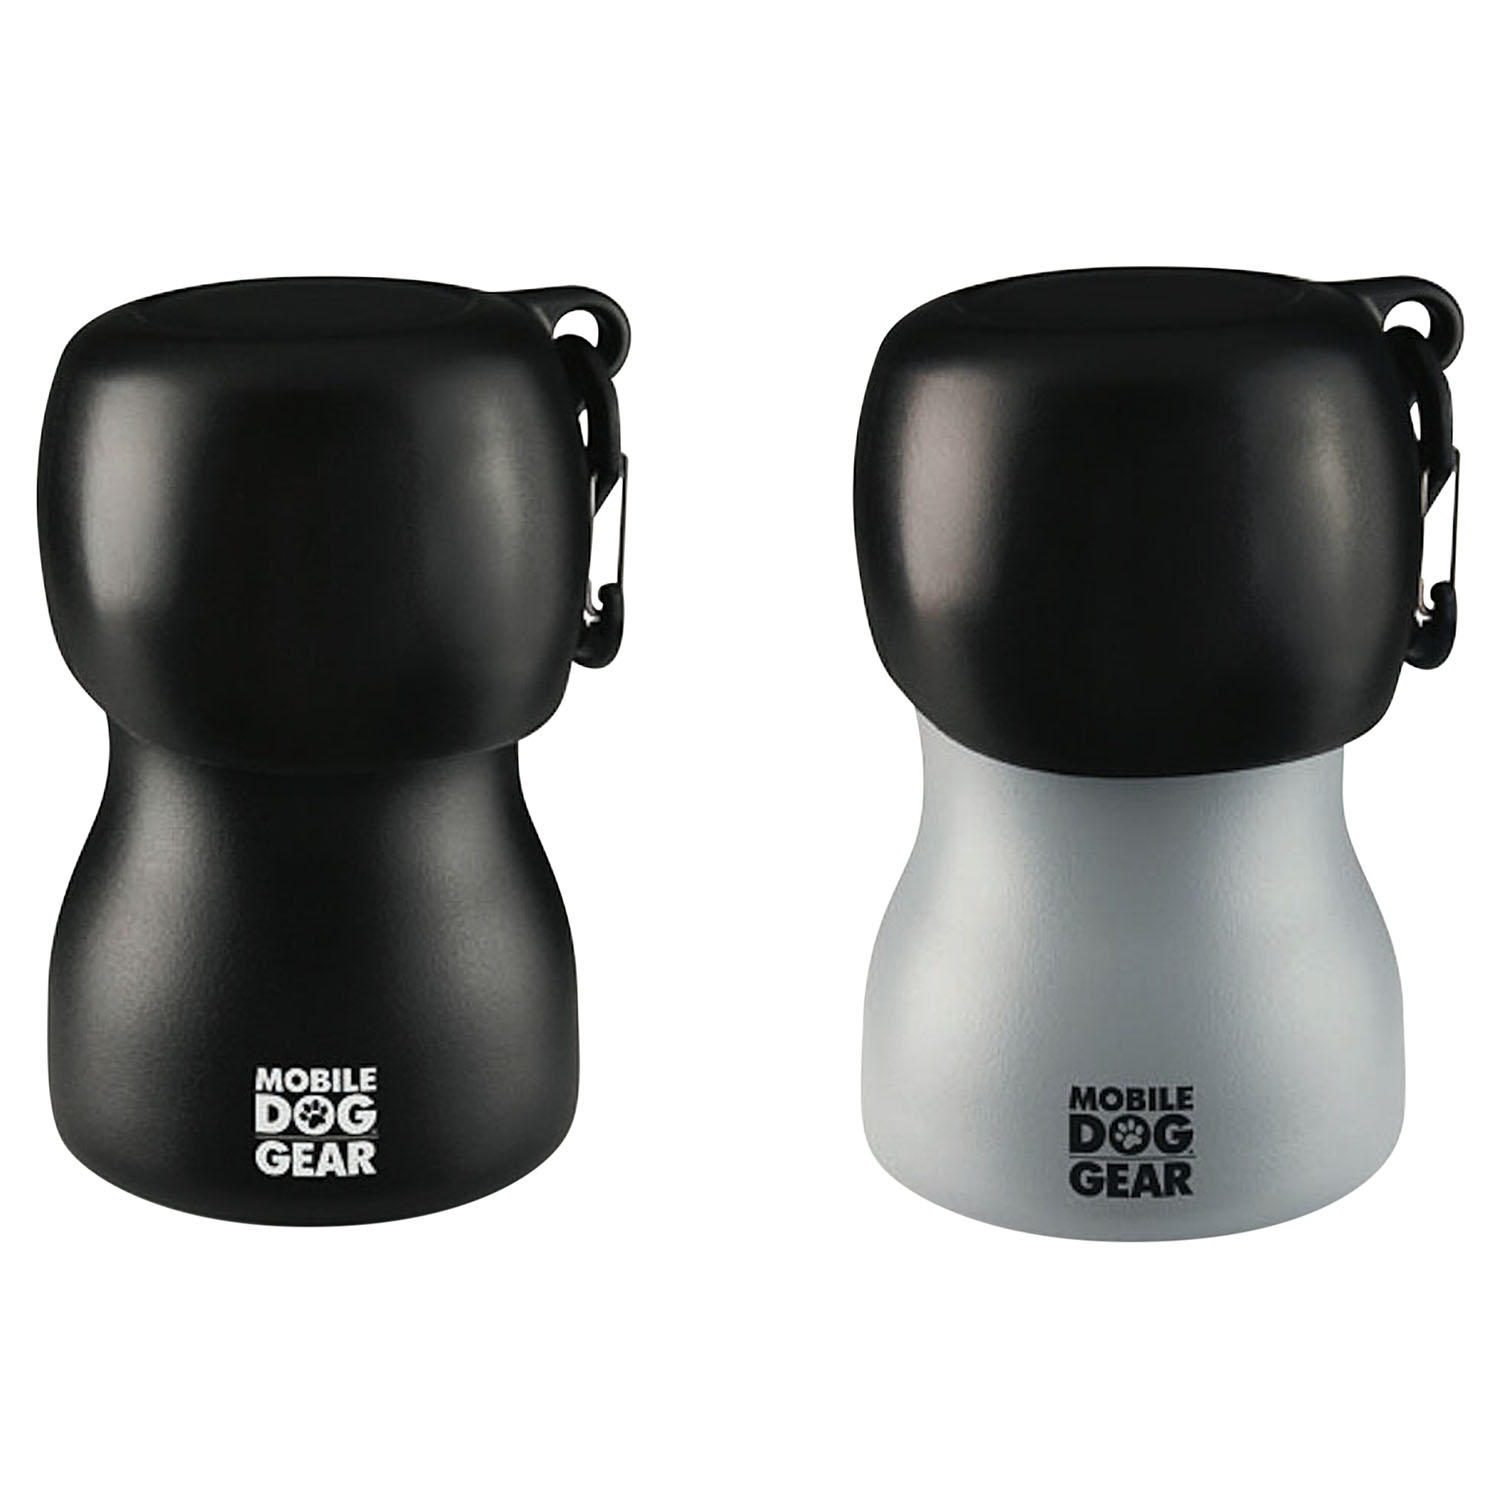 Overland Mobile Dog Gear 9.5 Oz Stainless Steel Water Bottles, Black/Gray, Pack Of 2 Bottles